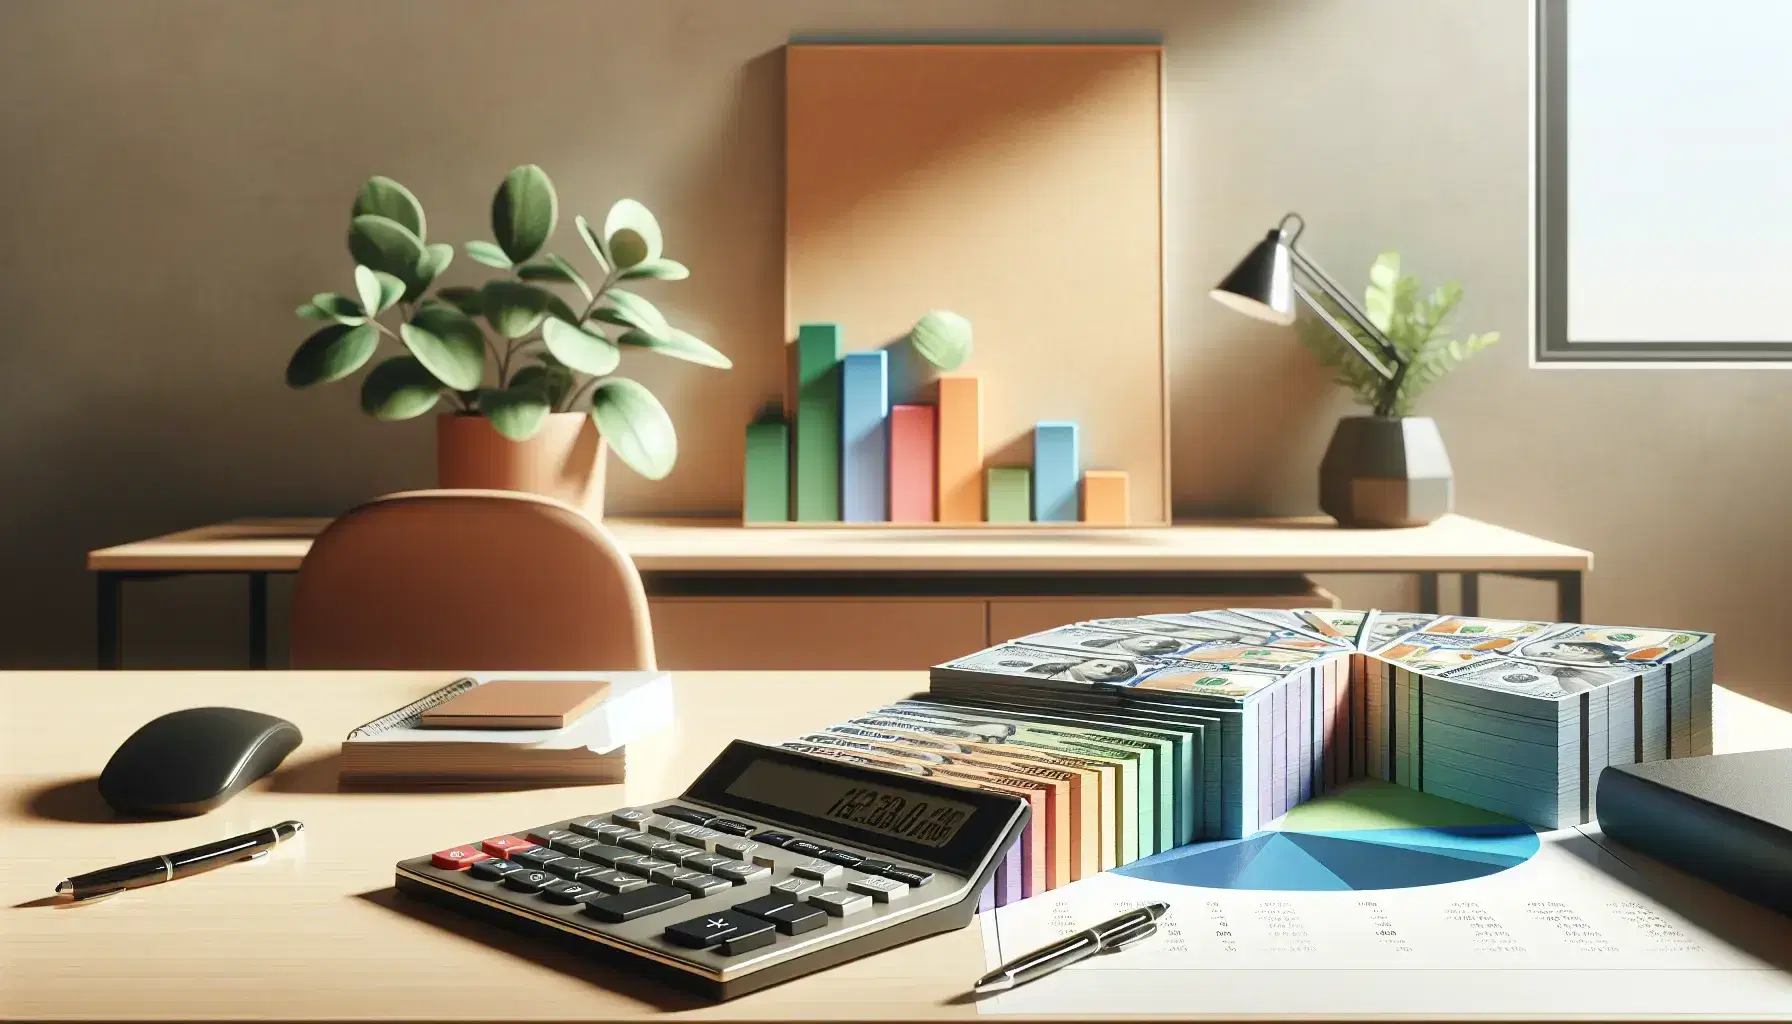 Escritorio de oficina con calculadora moderna, billetes de distintas denominaciones y gráfico de pastel tridimensional, planta interior al fondo.